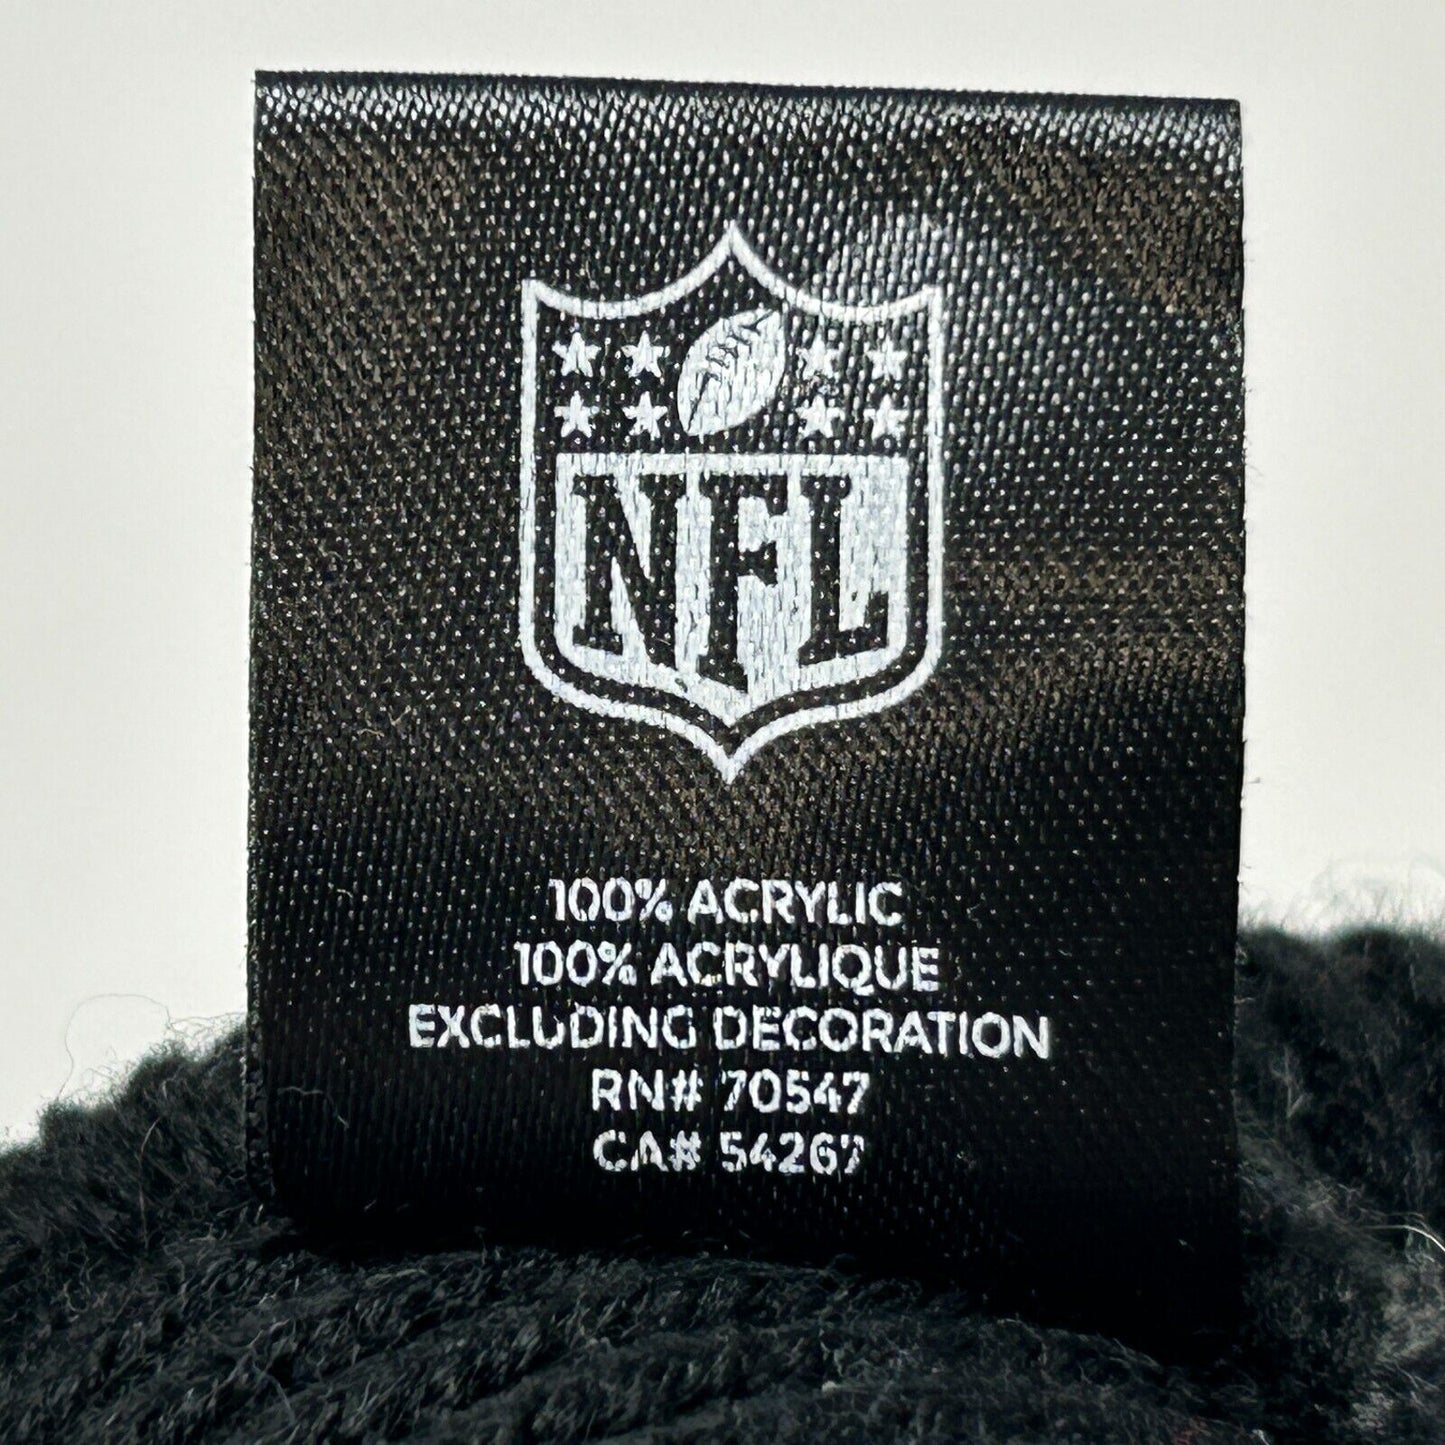 卡罗莱纳黑豹队 Pom Pom 毛线帽翻边无边礼帽黑色 NFL 橄榄球 47 品牌